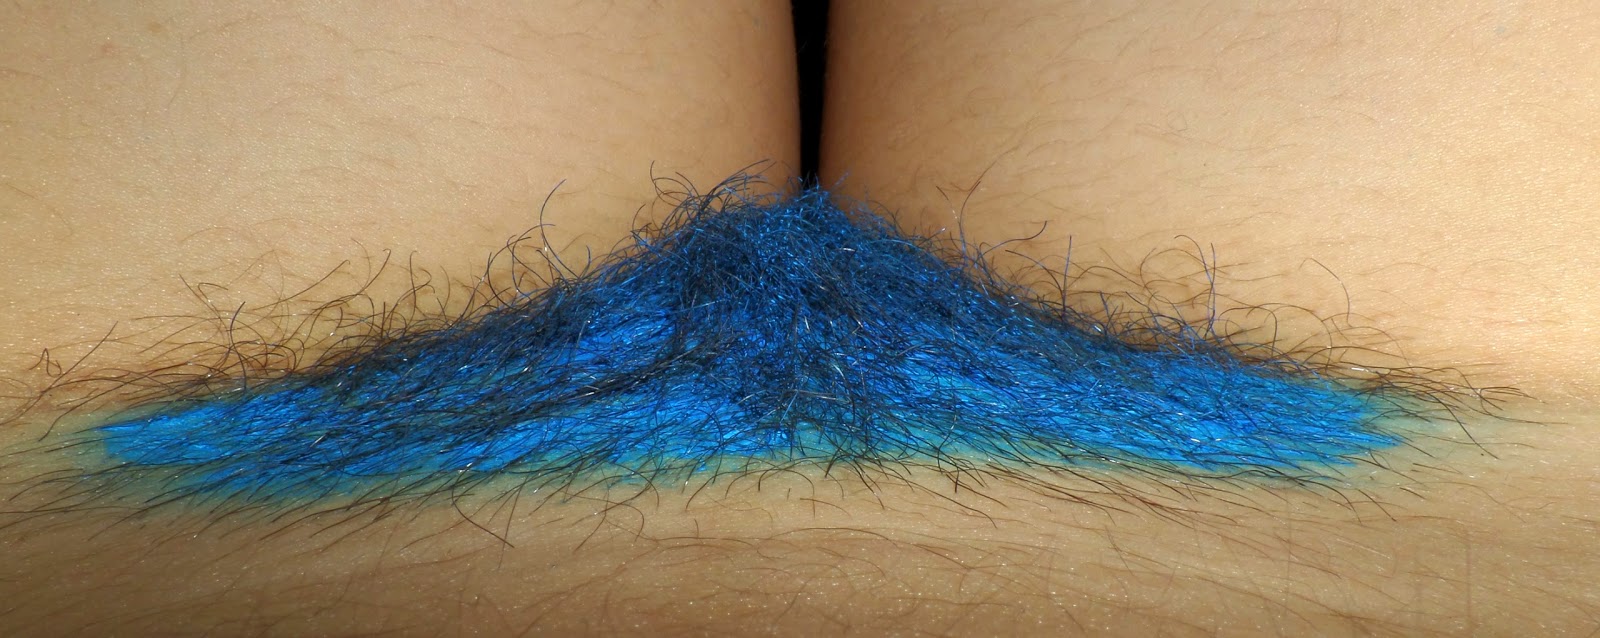 Ù…Ø°ÙƒØ±Ø§Øª Ø«Ø§Ø¦Ø±Ø©: Blue Unshaved Pussy